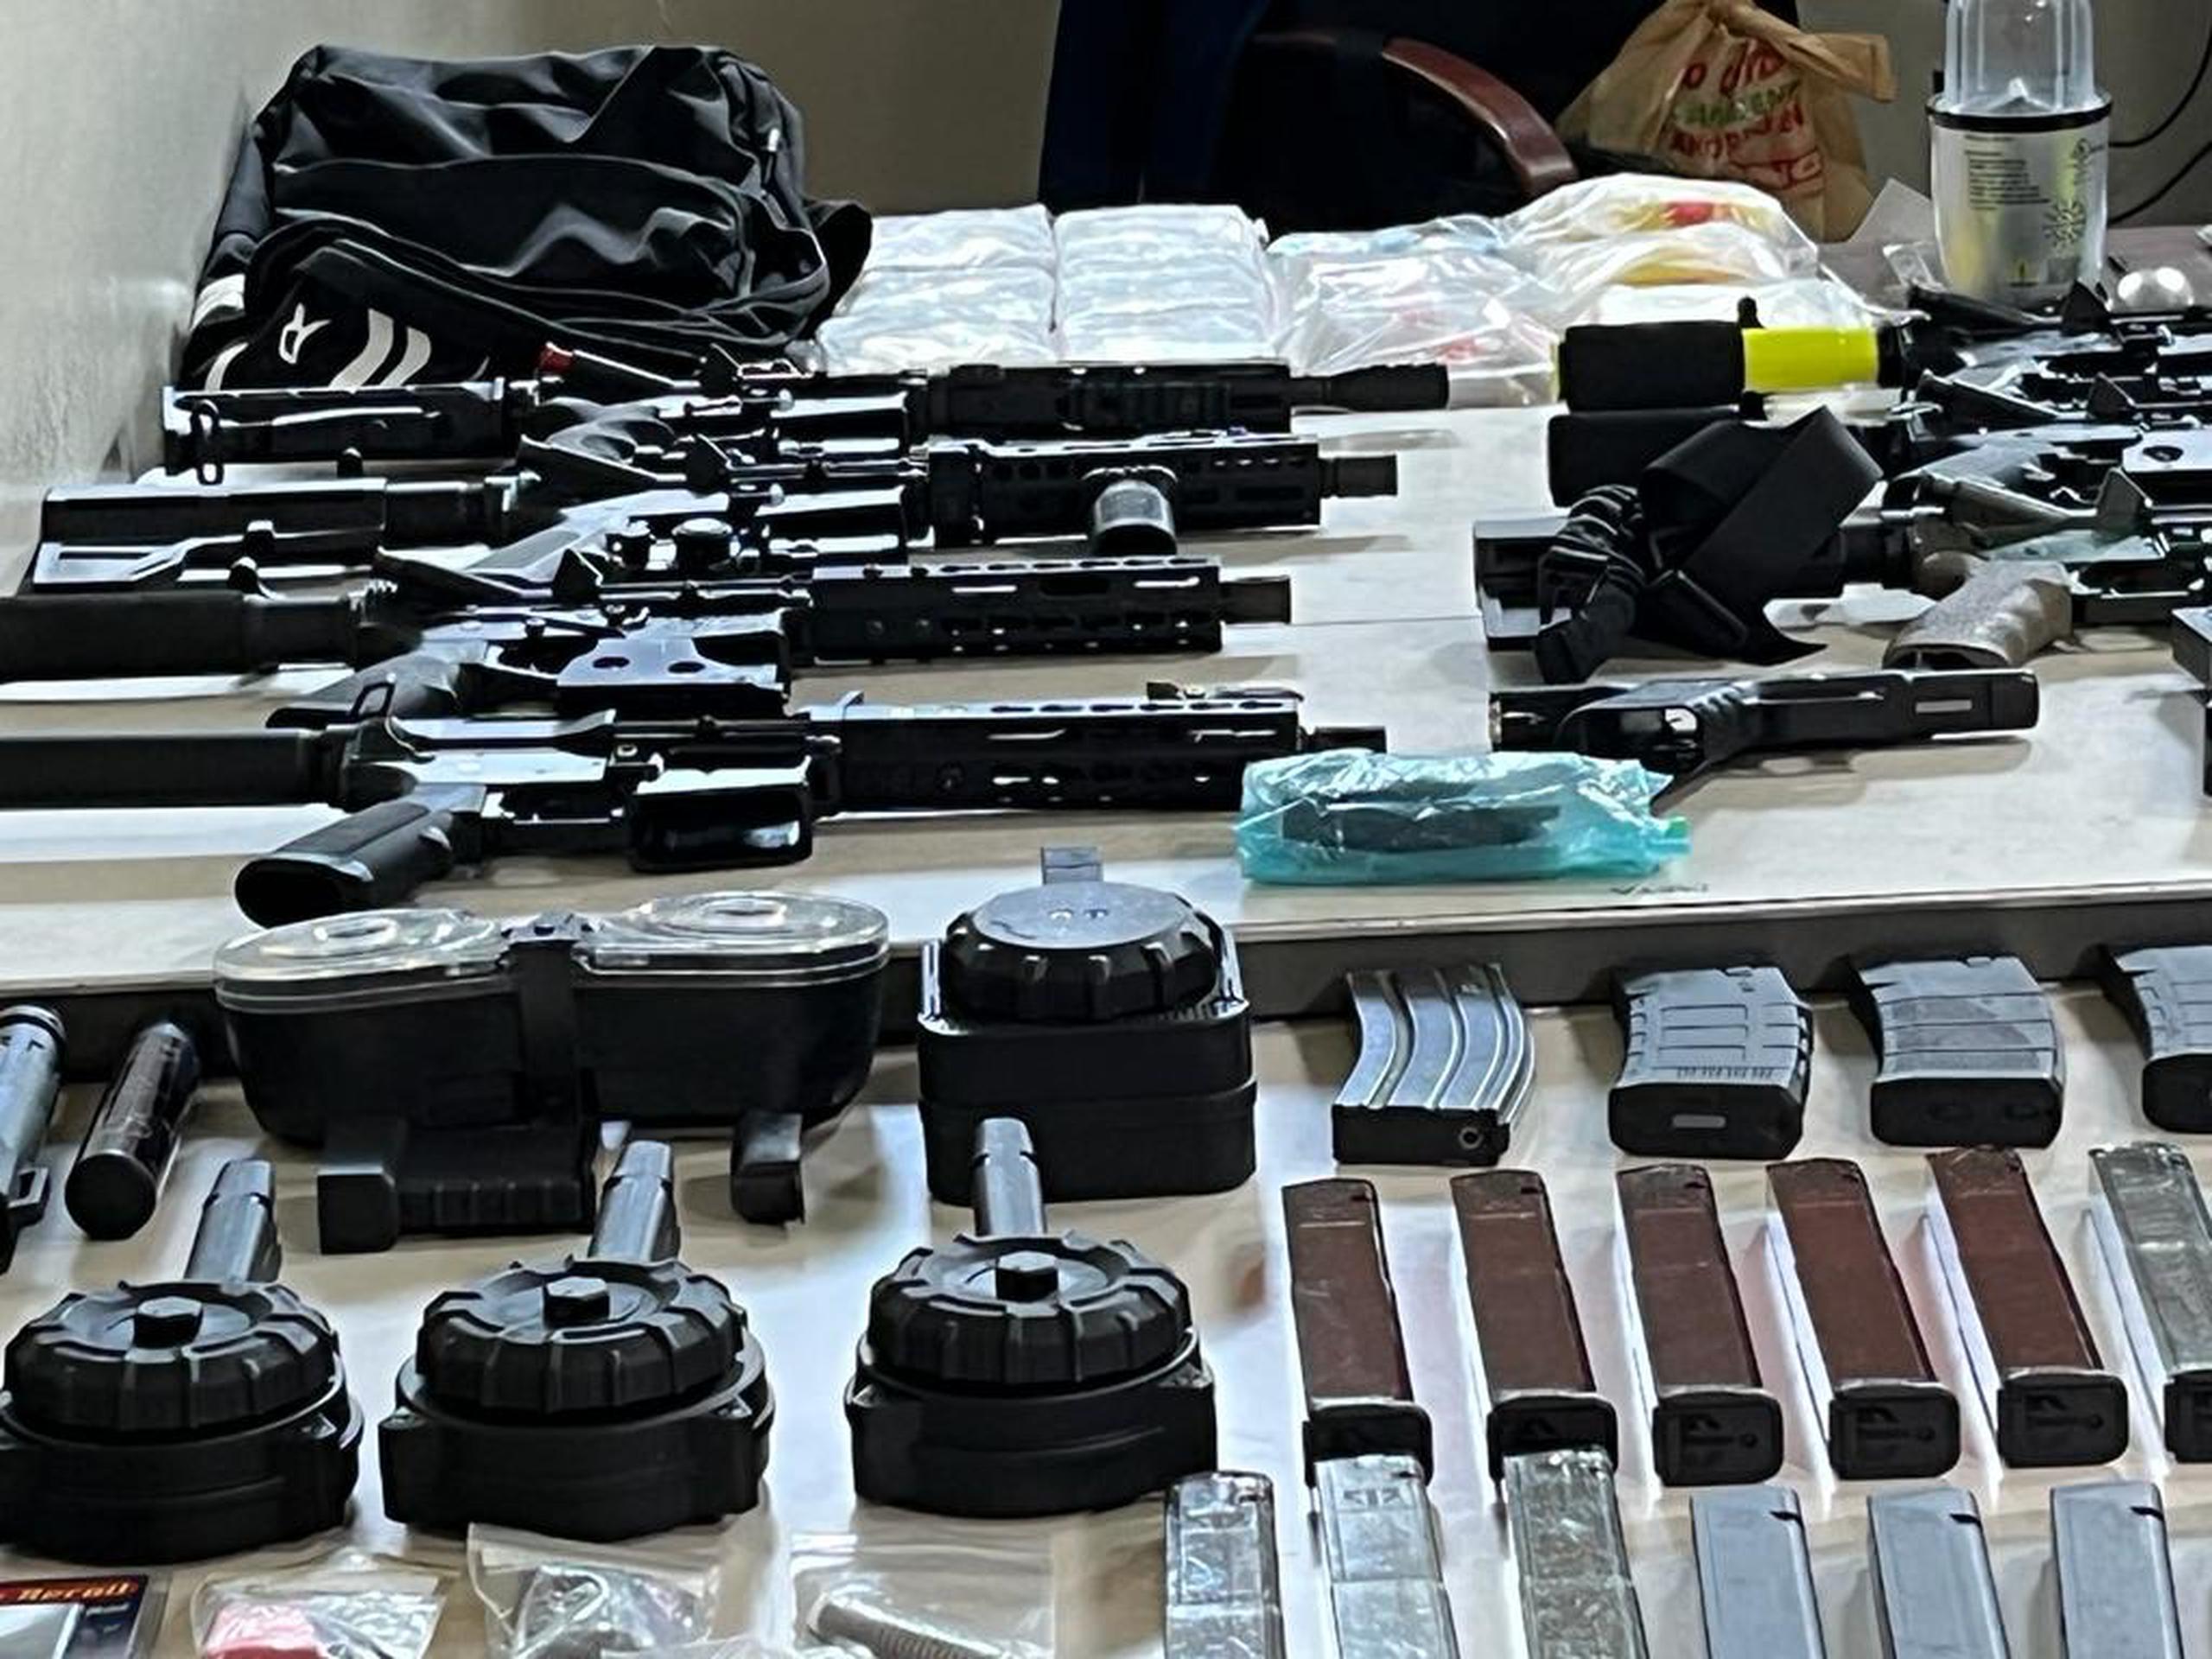 Armas ilegales, cargadores, municiones, chalecos antibalas y sustancias controladas ocupadas en una casa abandonada del barrio Playita Cortada, en Santa Isabel.